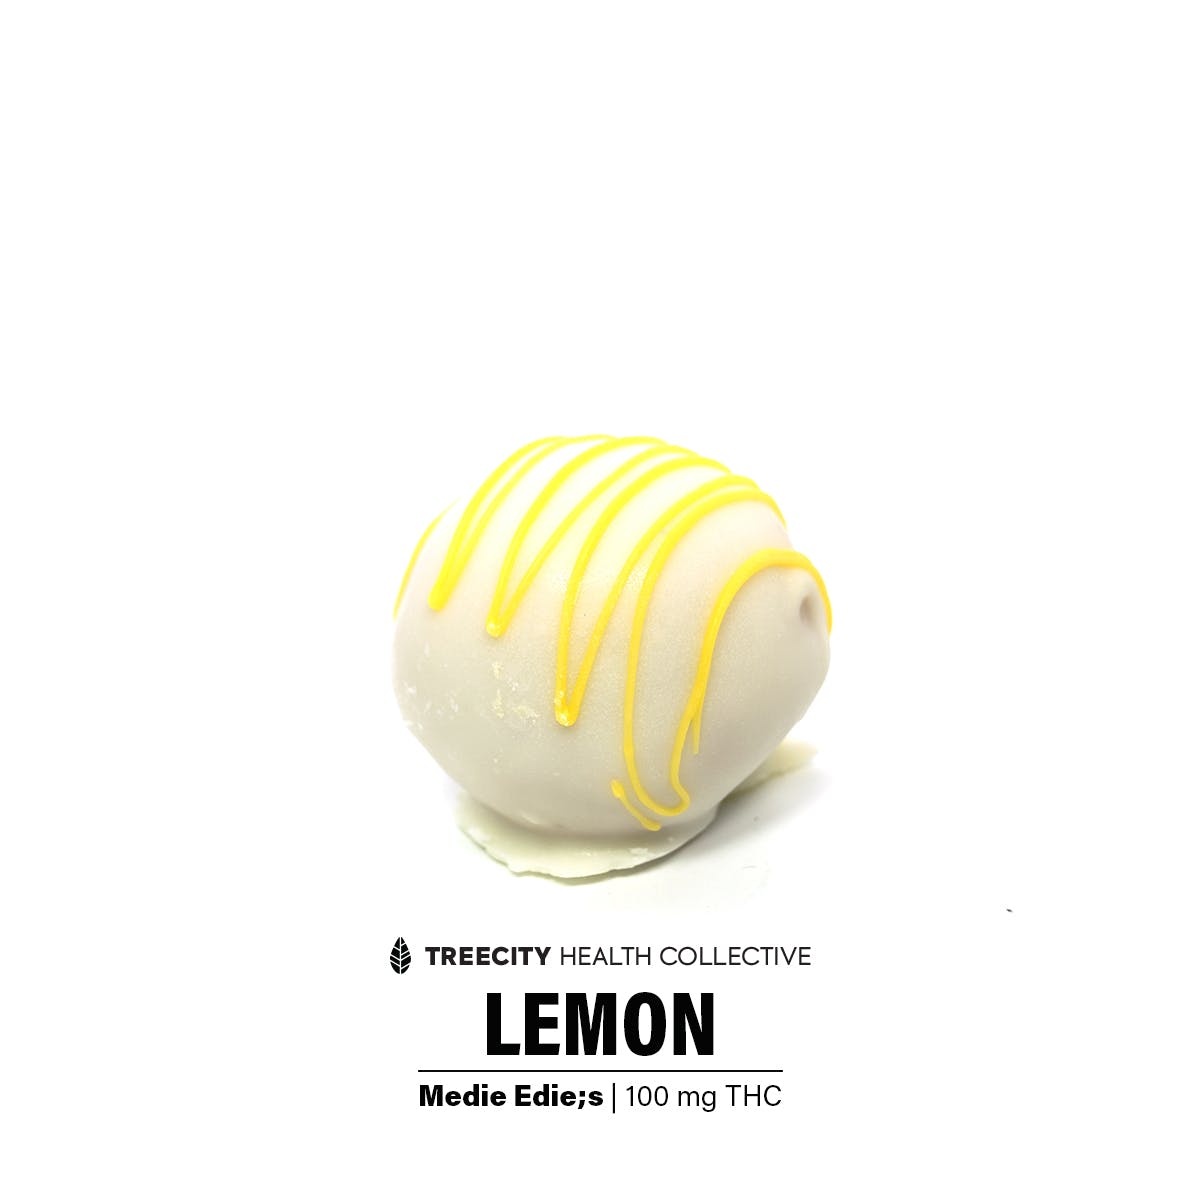 Lemon - DeStress Ball - Hybrid - 100mg THC Per Package - Medie Edie's